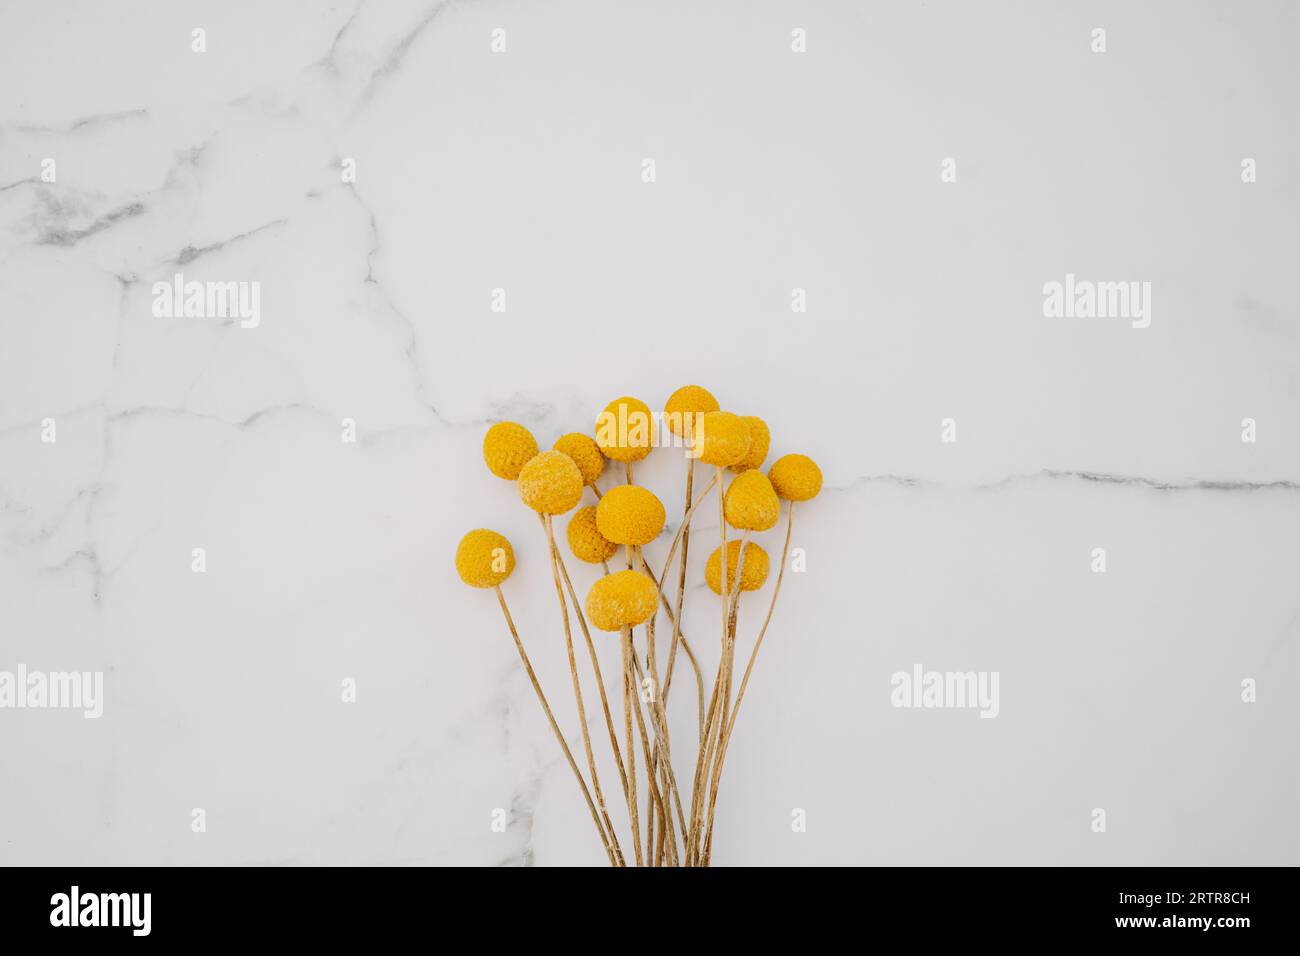 Blumenstrauß aus getrockneten natürlichen dekorativen gelben Blumen Craspedia globosa auf weißem Marmorhintergrund. Draufsicht. Leerzeichen kopieren. Flach liegend Stockfoto